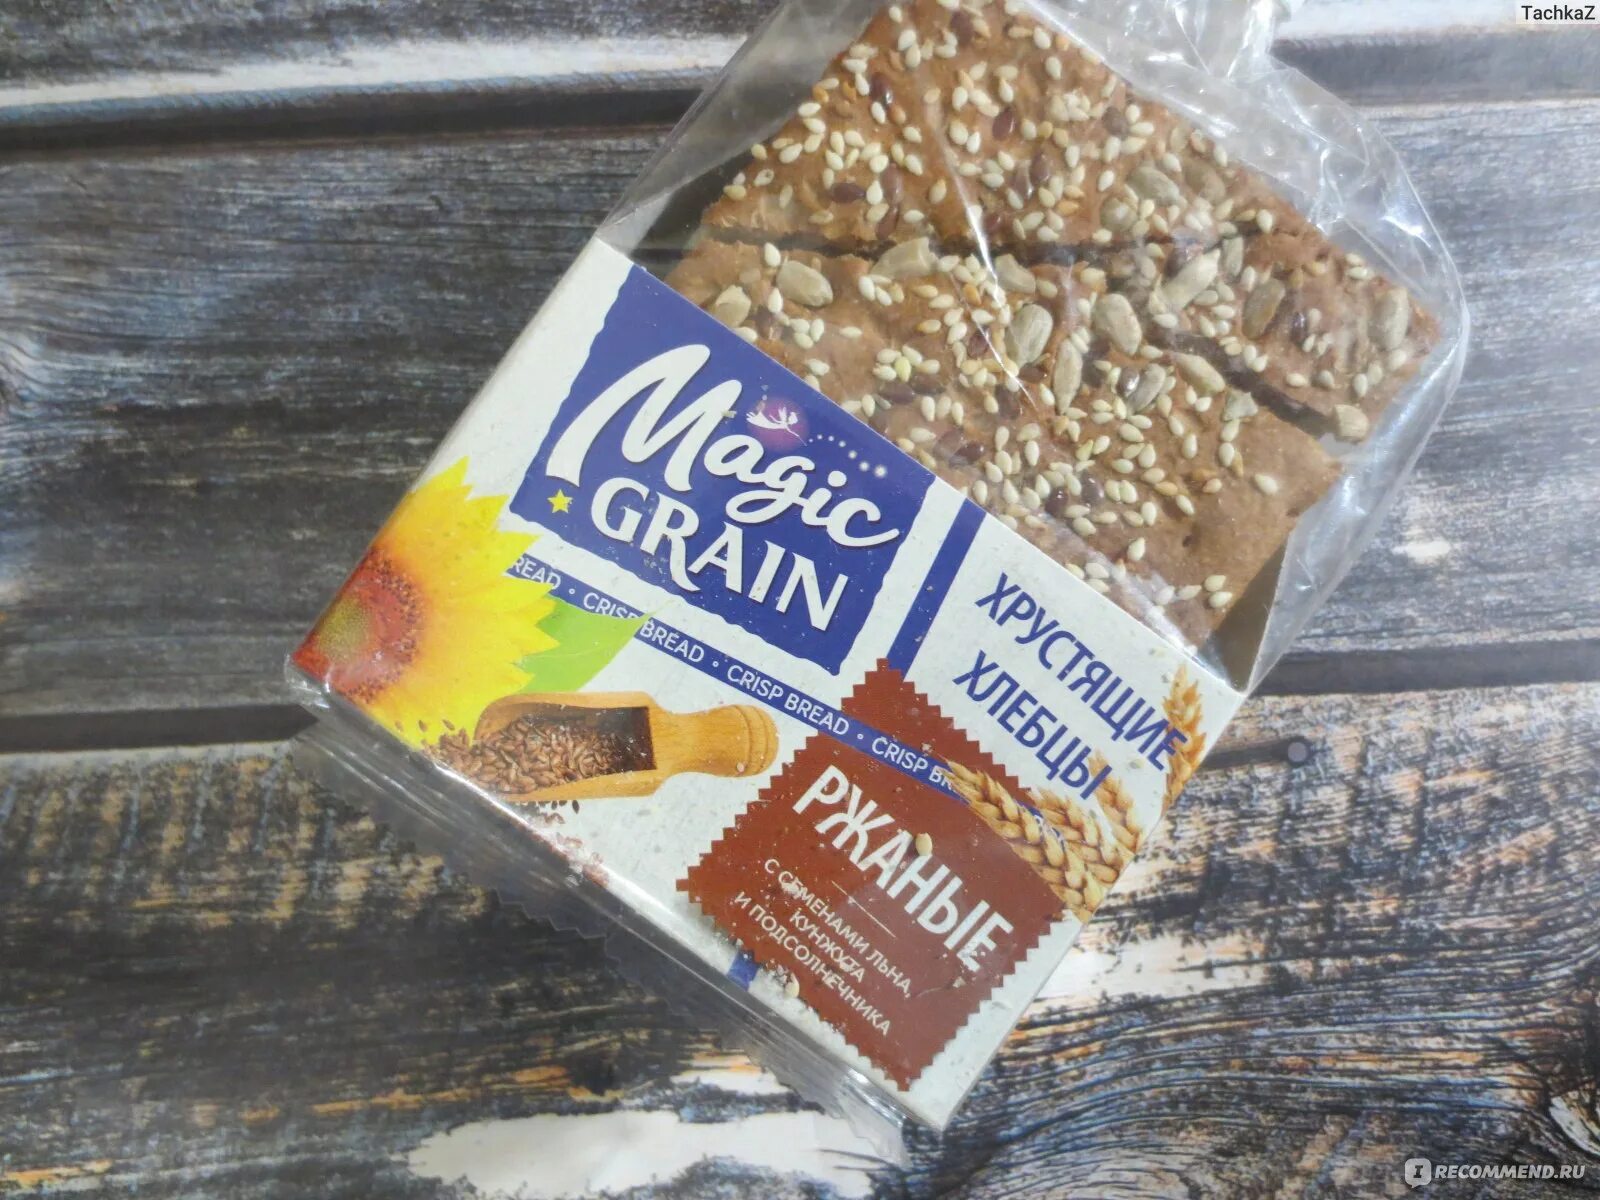 Magic grain. Хлебцы Magic Grain. Хлебцы Magic Grain с семенами льна. Магик Граин хлебцы ржаные с семенами льна. Хлебцы Magic Grain ржаные.